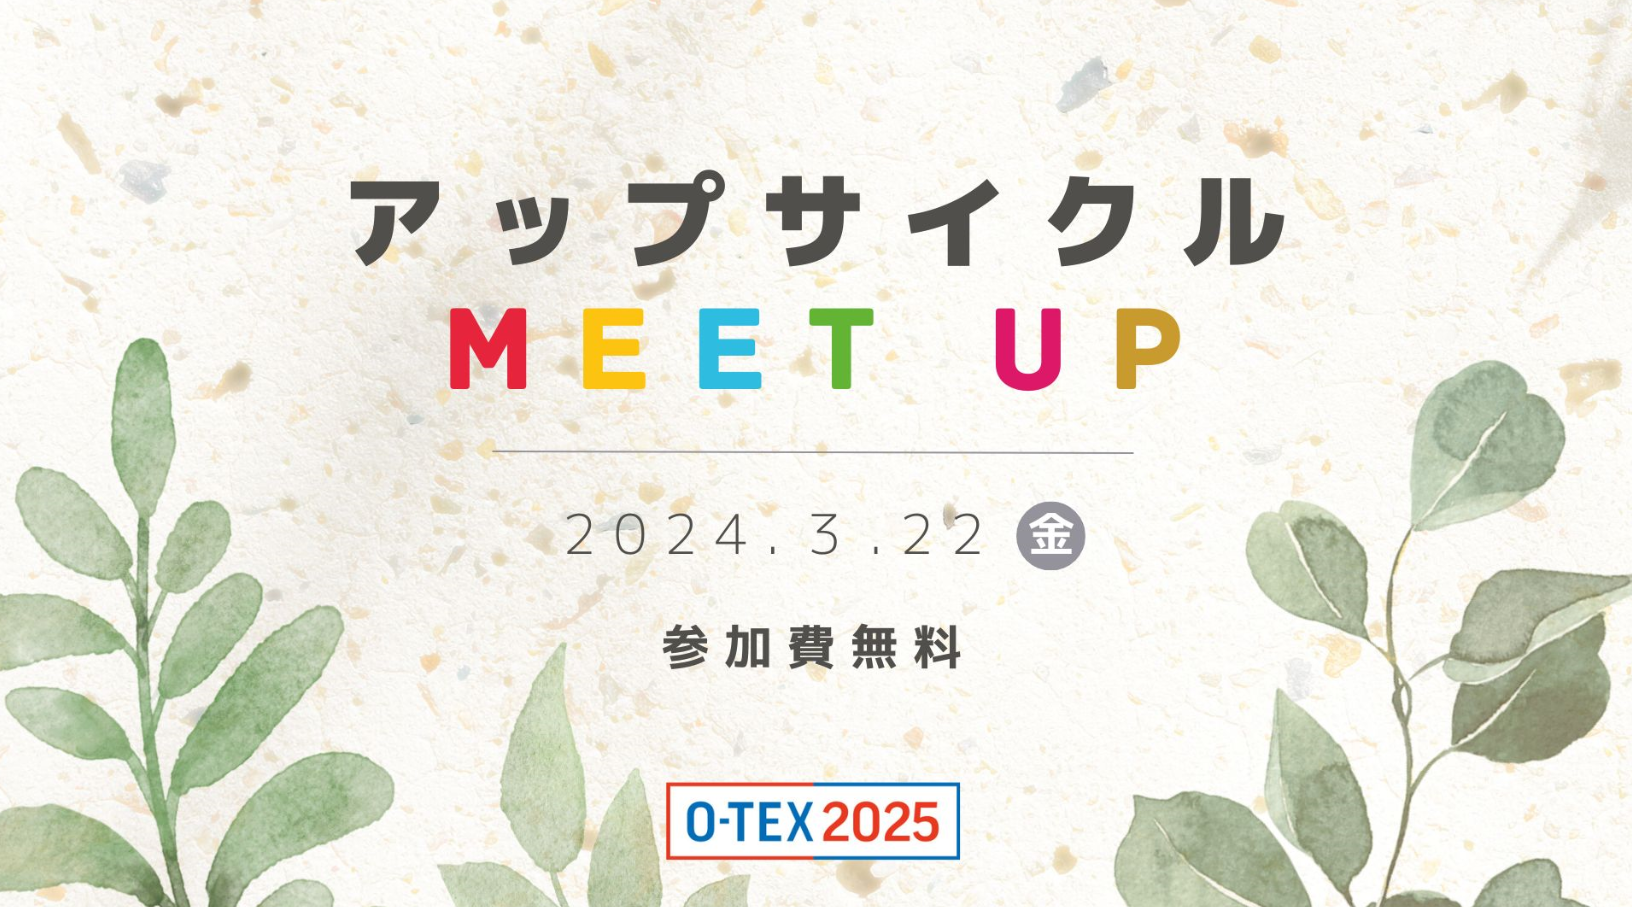 大阪産業創造館が開催するイベント「アップサイクル Meet up」に登壇